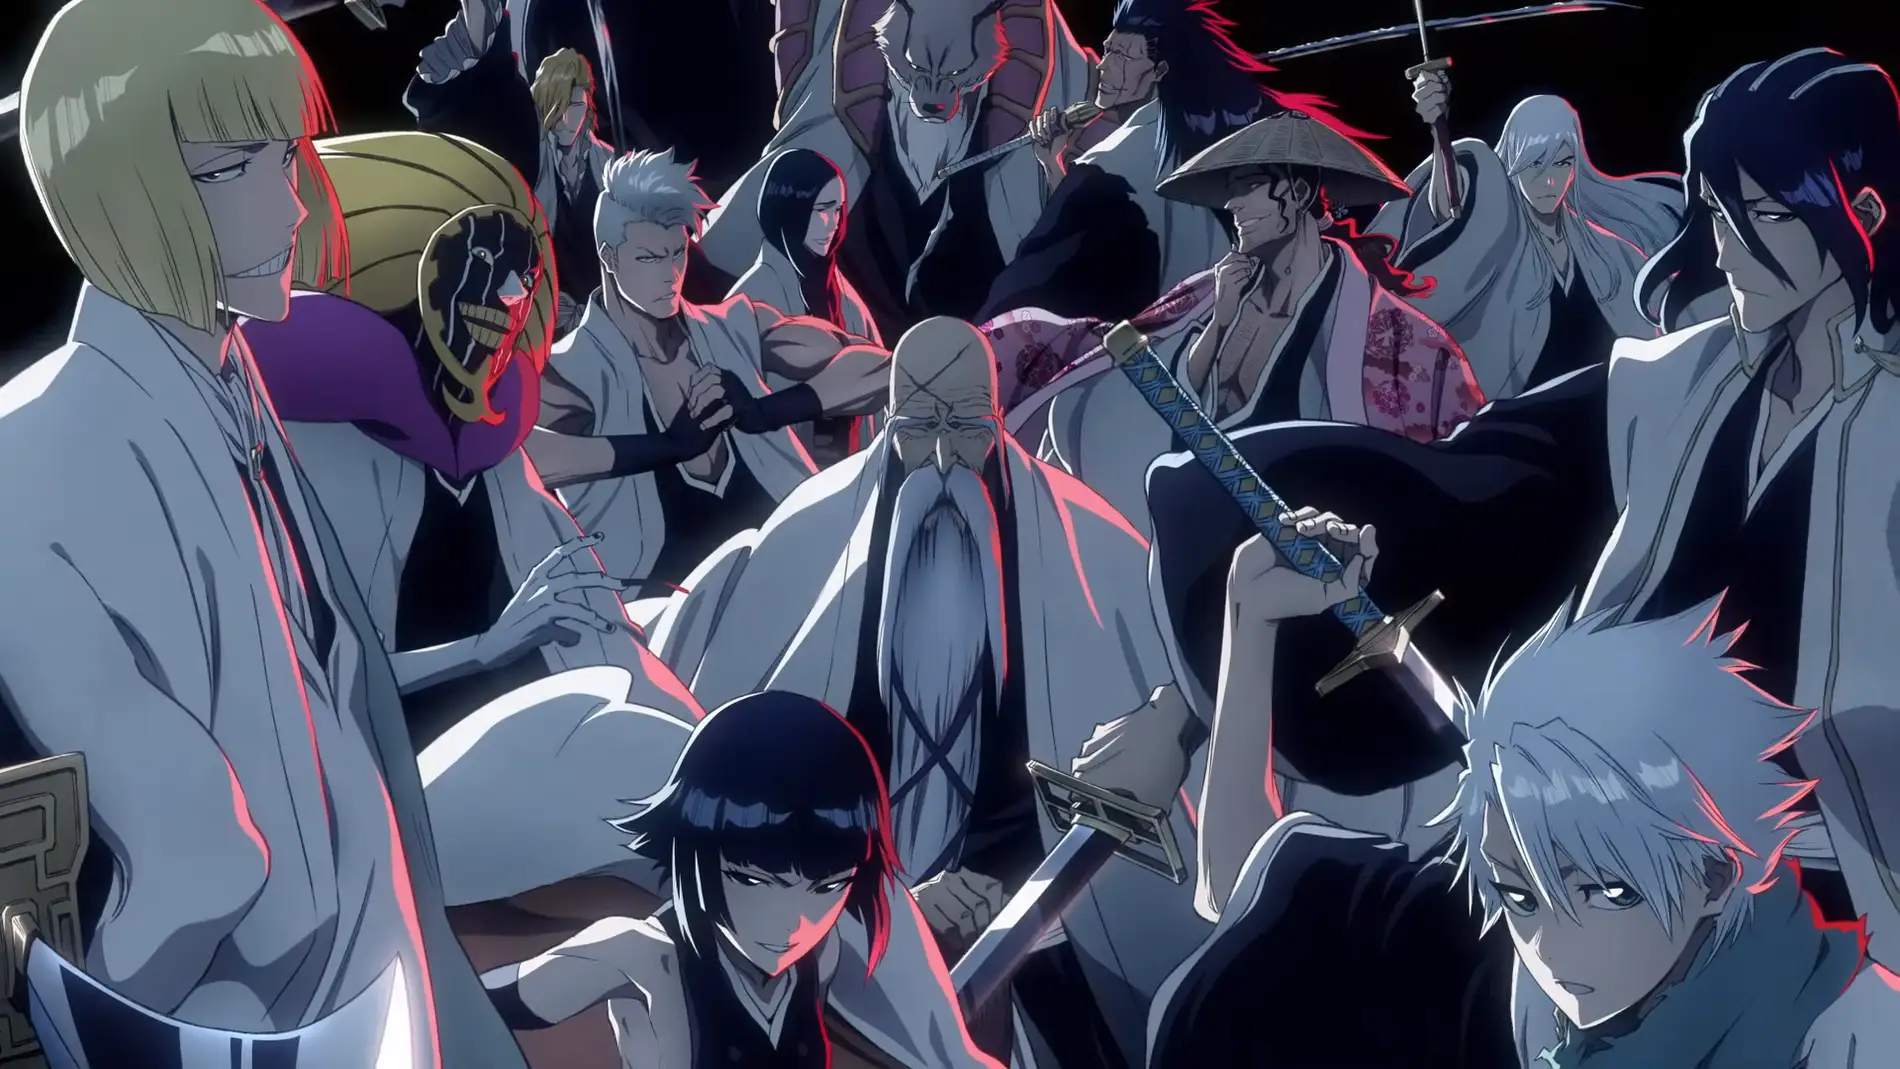 Bleach TYBW' confirma la presencia de peleas exclusivas del anime